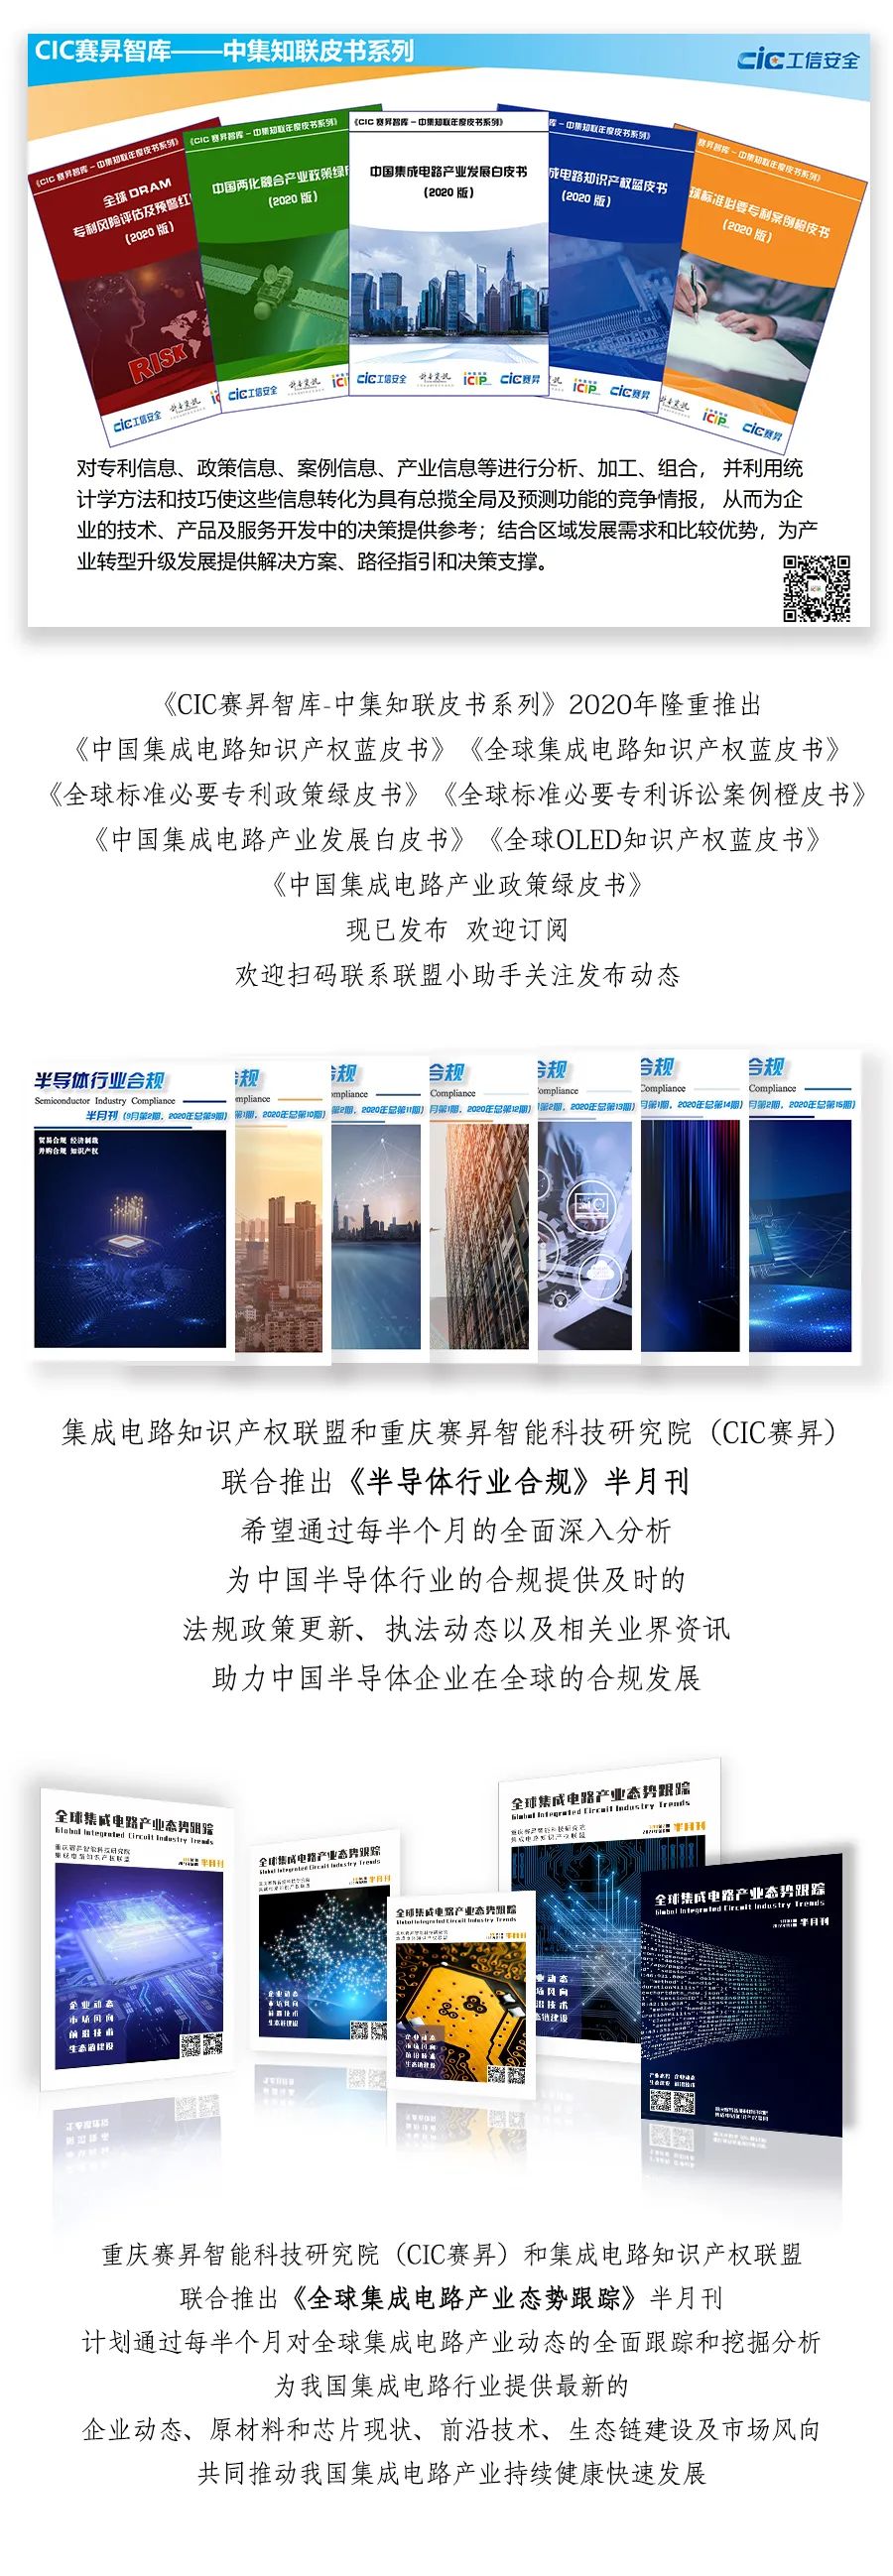 热烈欢迎重庆八城科技有限公司加入联盟